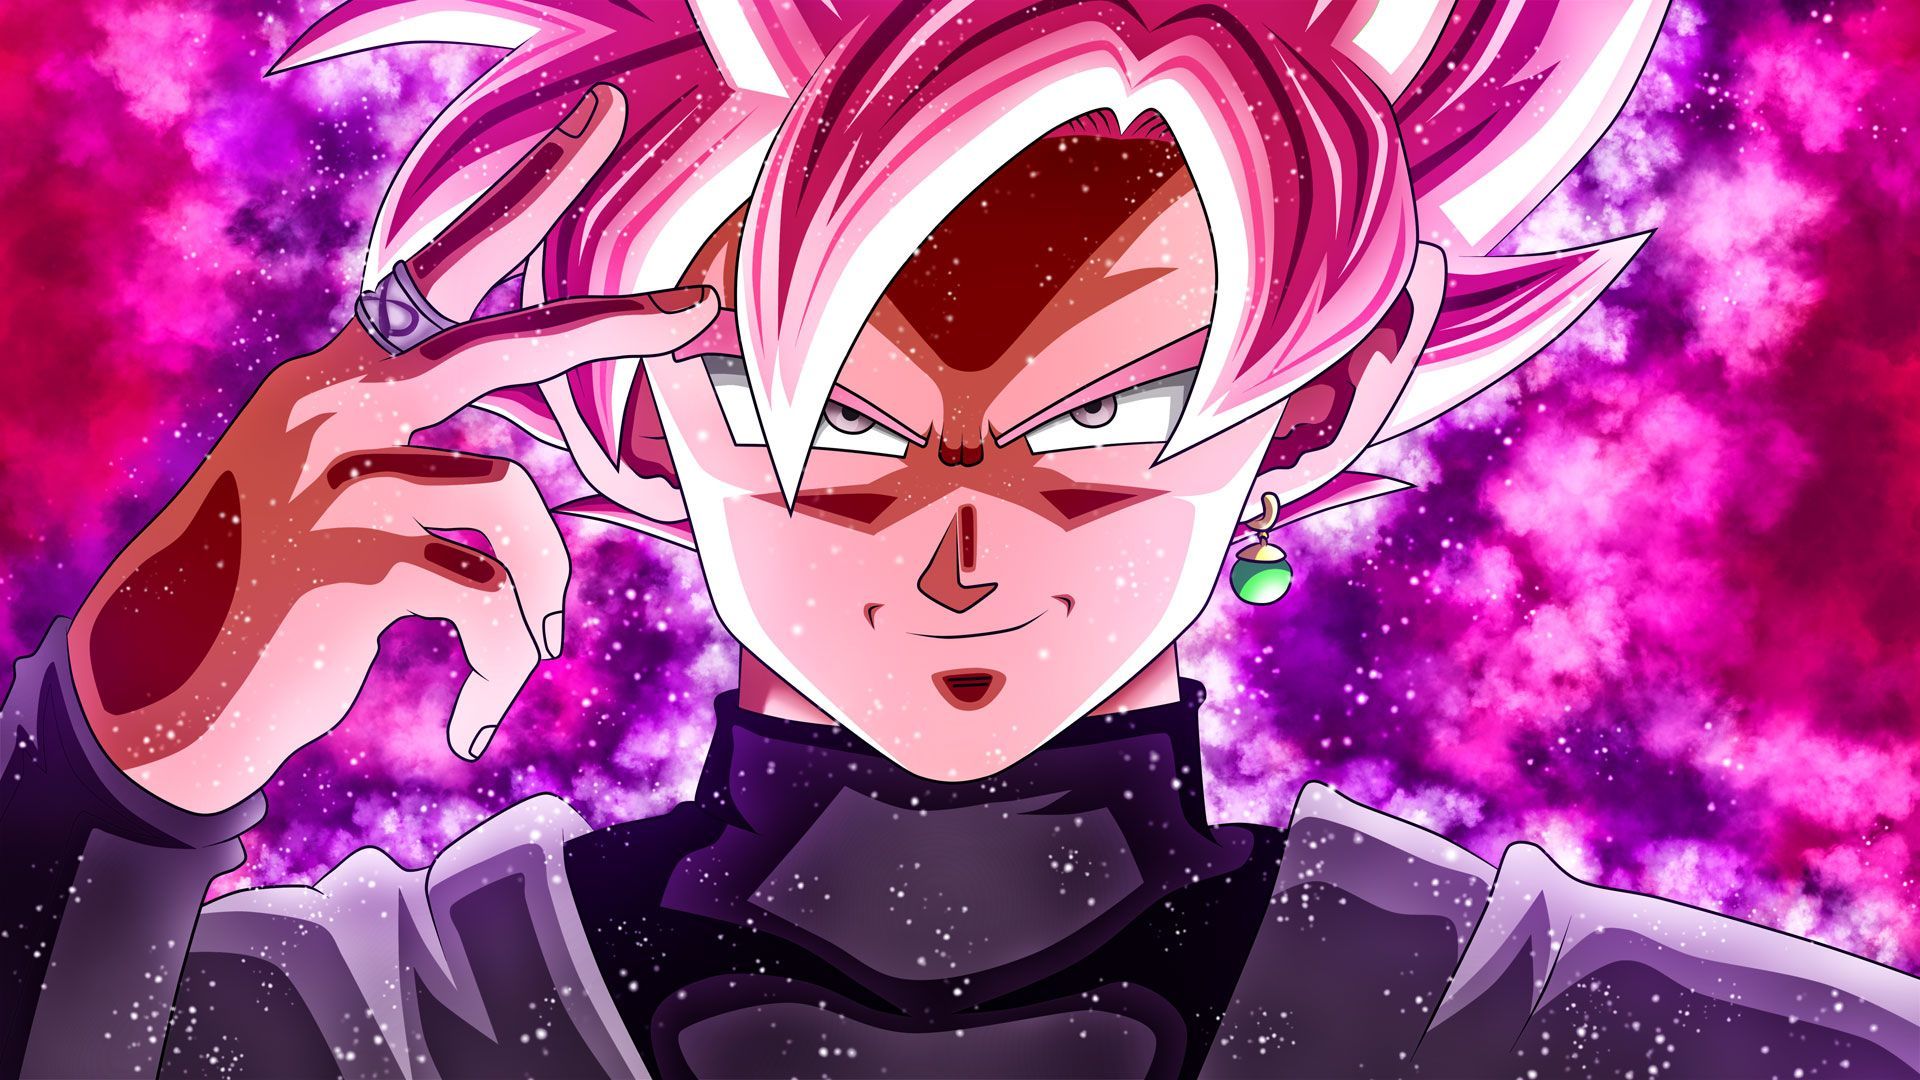 Hãy khám phá hình ảnh mới nhất của Goku Black (Rose Form) và thưởng thức sống động những trận chiến giữa các nhân vật. Cùng nhìn thấy sức mạnh bất tận của nhân vật này trong hình ảnh HD tuyệt đẹp.